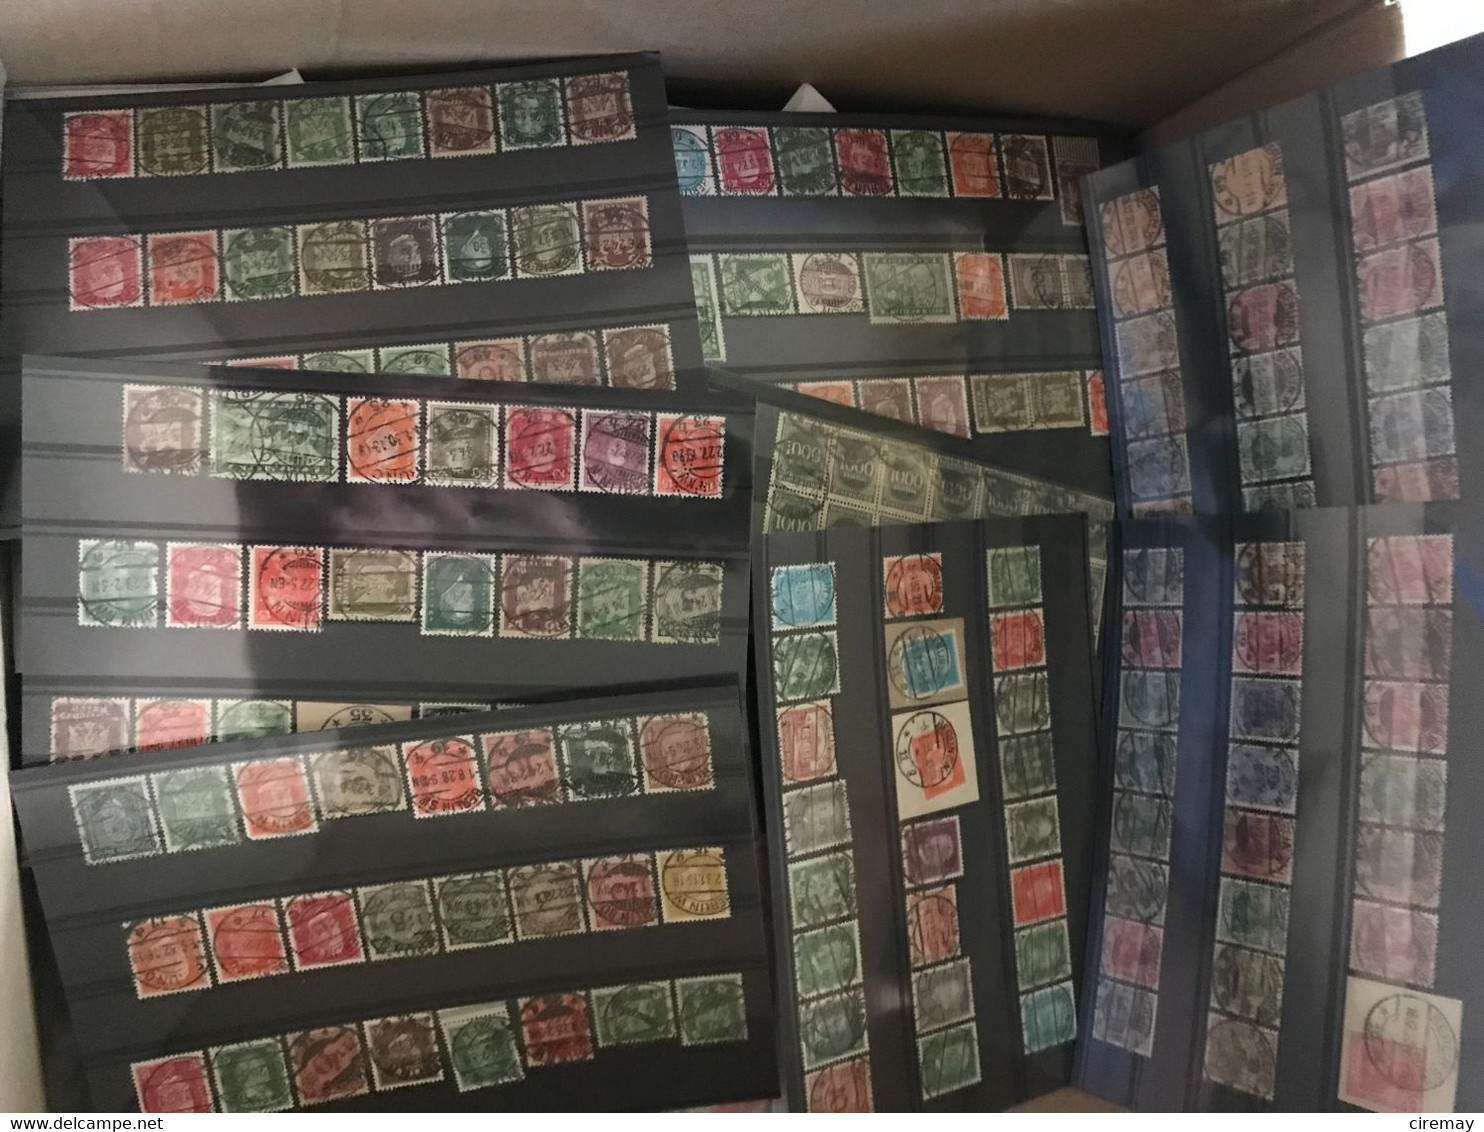 Ciremay Box 12.8 Kg - Lots & Kiloware (mixtures) - Min. 1000 Stamps